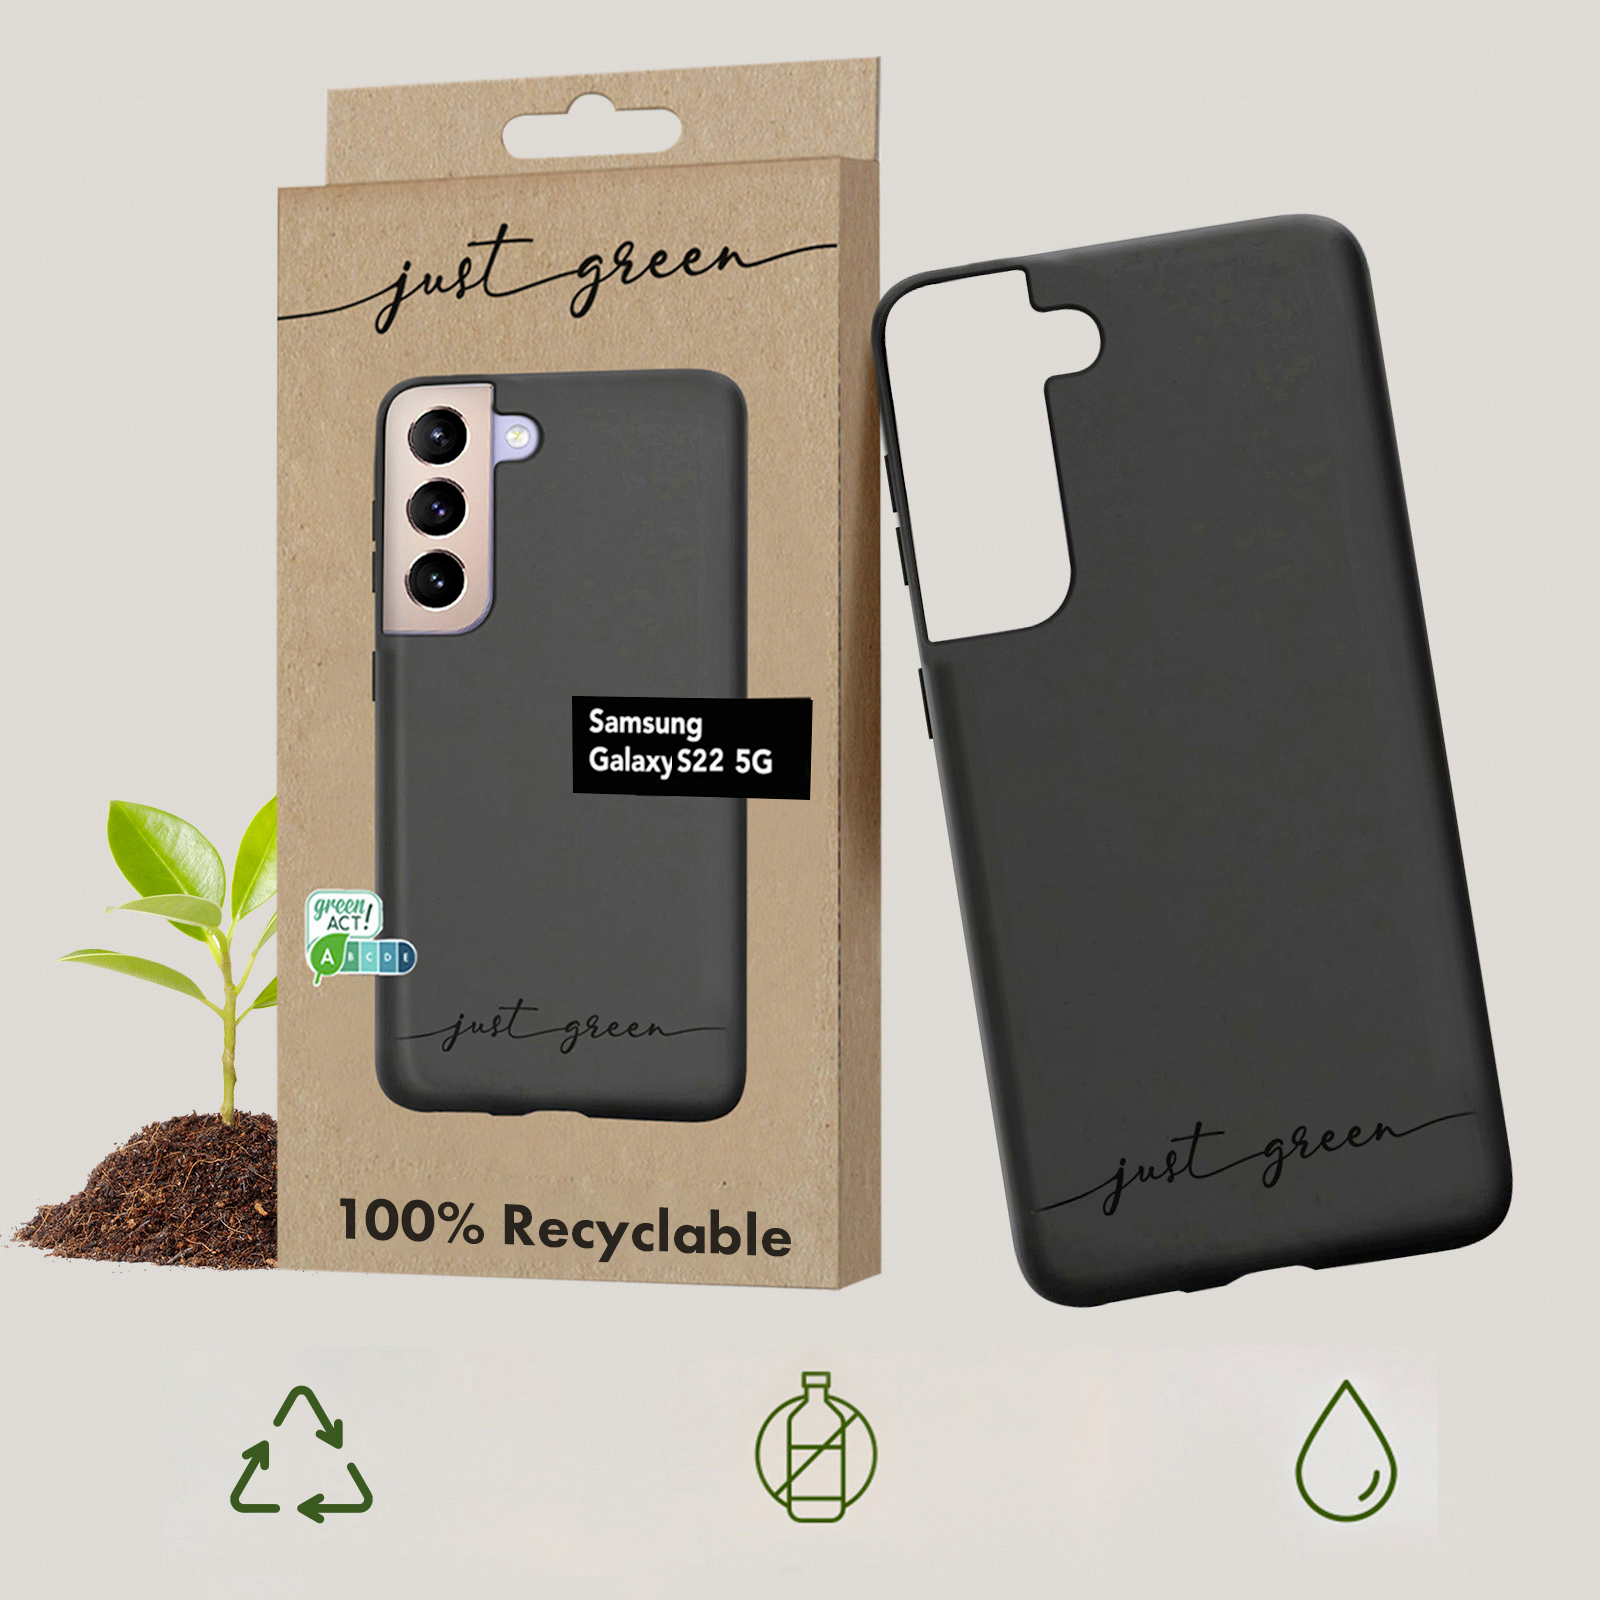 JUST GREEN 100% abbaubare Handyhülle Series, Galaxy S22, Schwarz Samsung, Backcover, biologisch